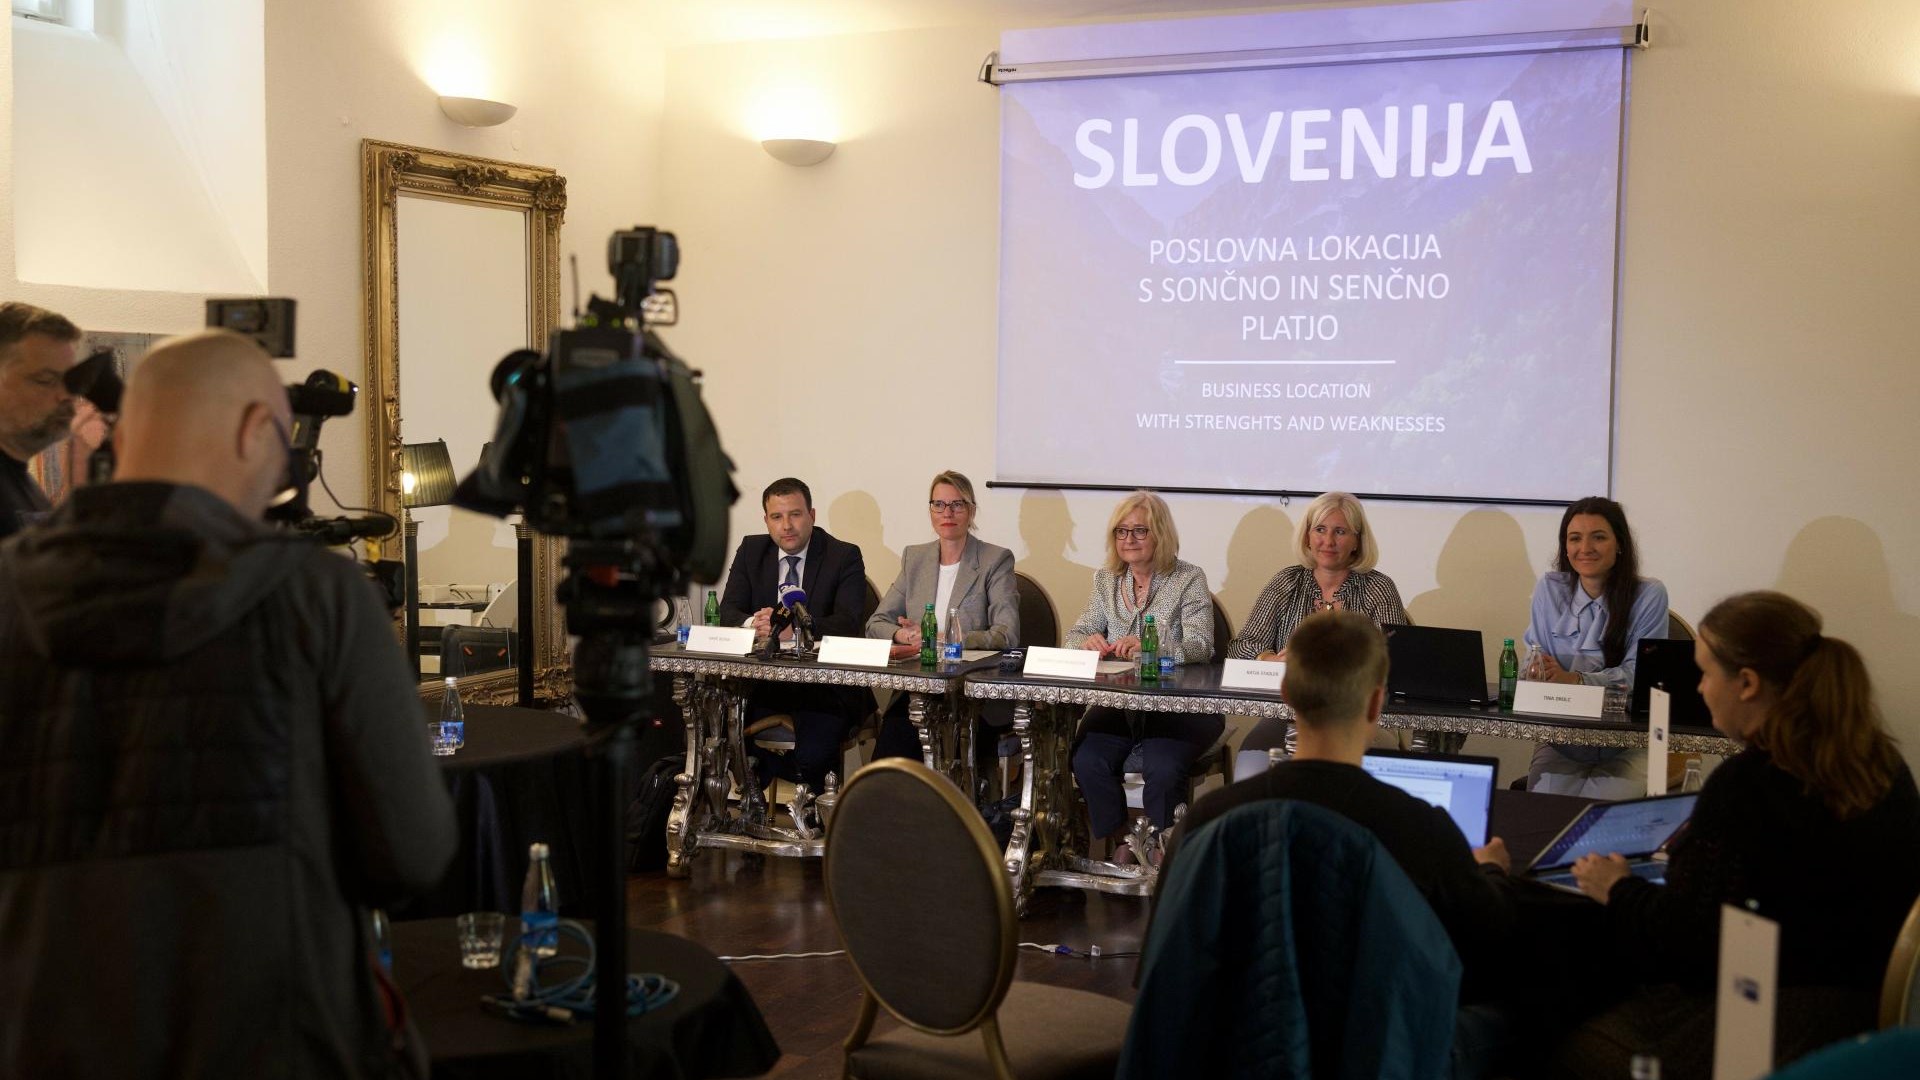 Slowenien, Wirtschaftsstandort mit Sonnen- und Schattenseiten